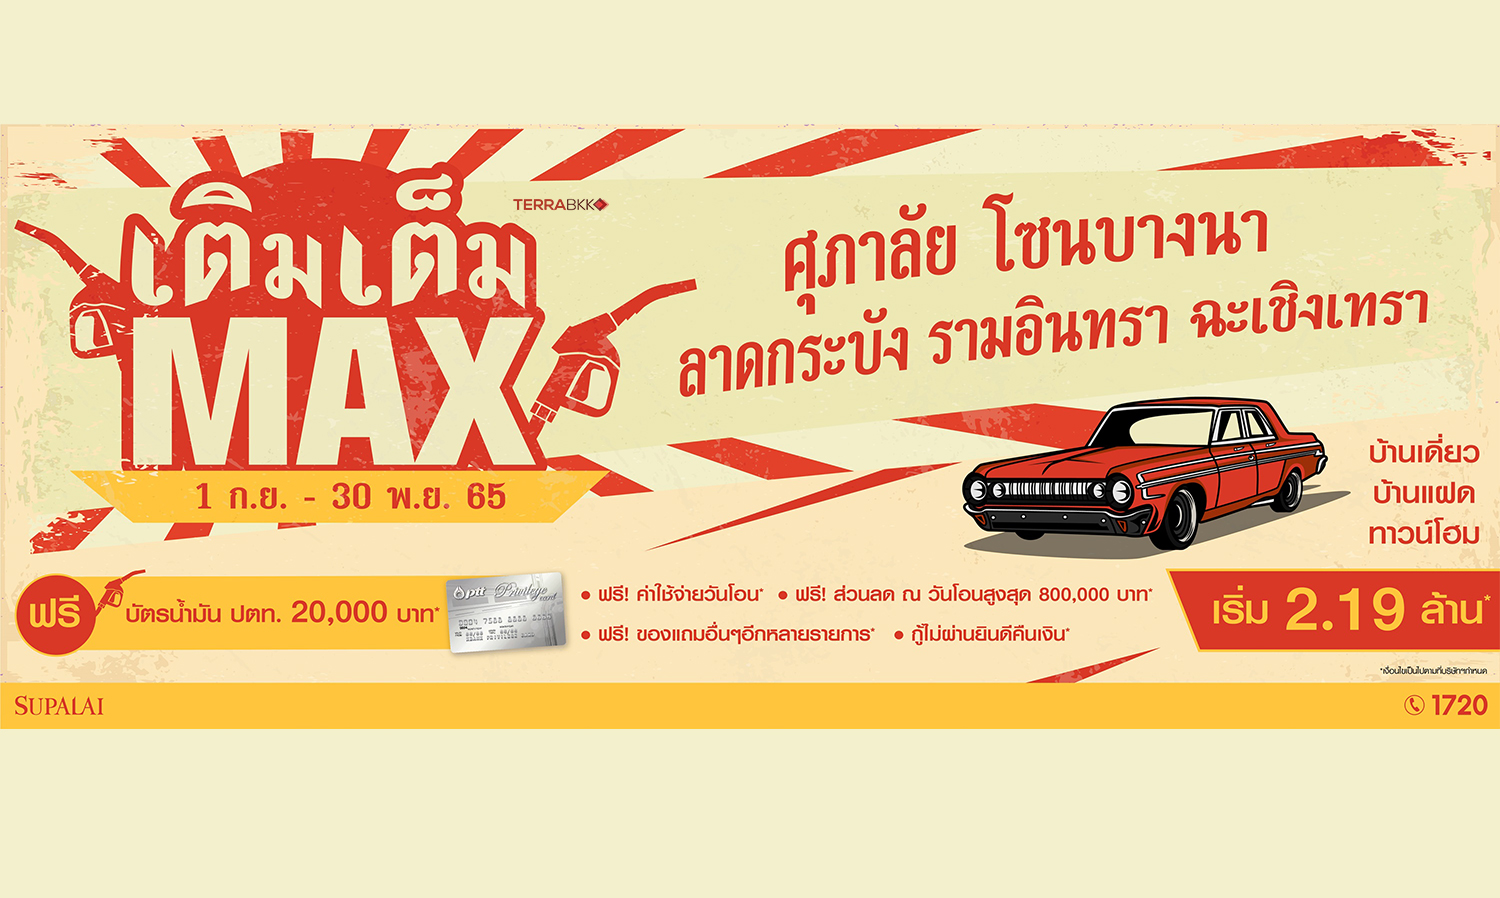 ศุภาลัยปล่อยโปรฯ “เติมเต็ม Max” แจกฟรี! บัตรเติมน้ำมัน 20,000 บาท เมื่อช้อปบ้านโซนบางนา - ลาดกระบัง - รามอินทรา - ฉะเชิงเทรา   